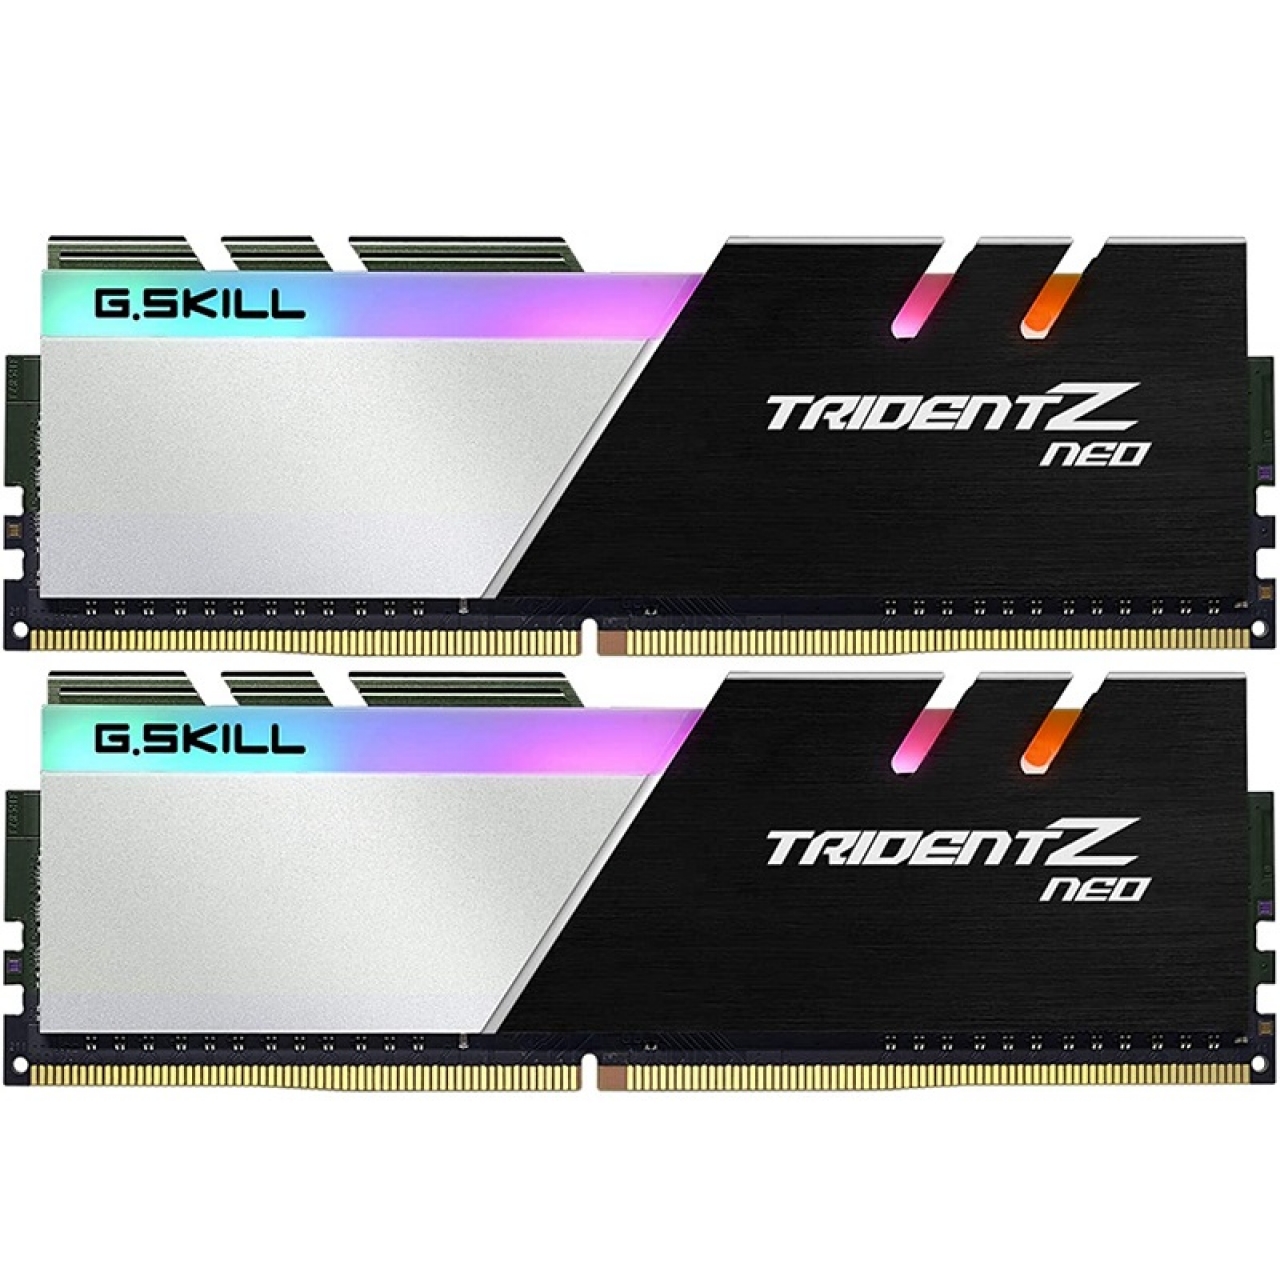 GSKILL 32GB (2X16GB) DDR4 3200MHZ CL16 RGB DUAL KIT PC RAM TRIDENT Z NEO F4-3200C16D-32GTZN